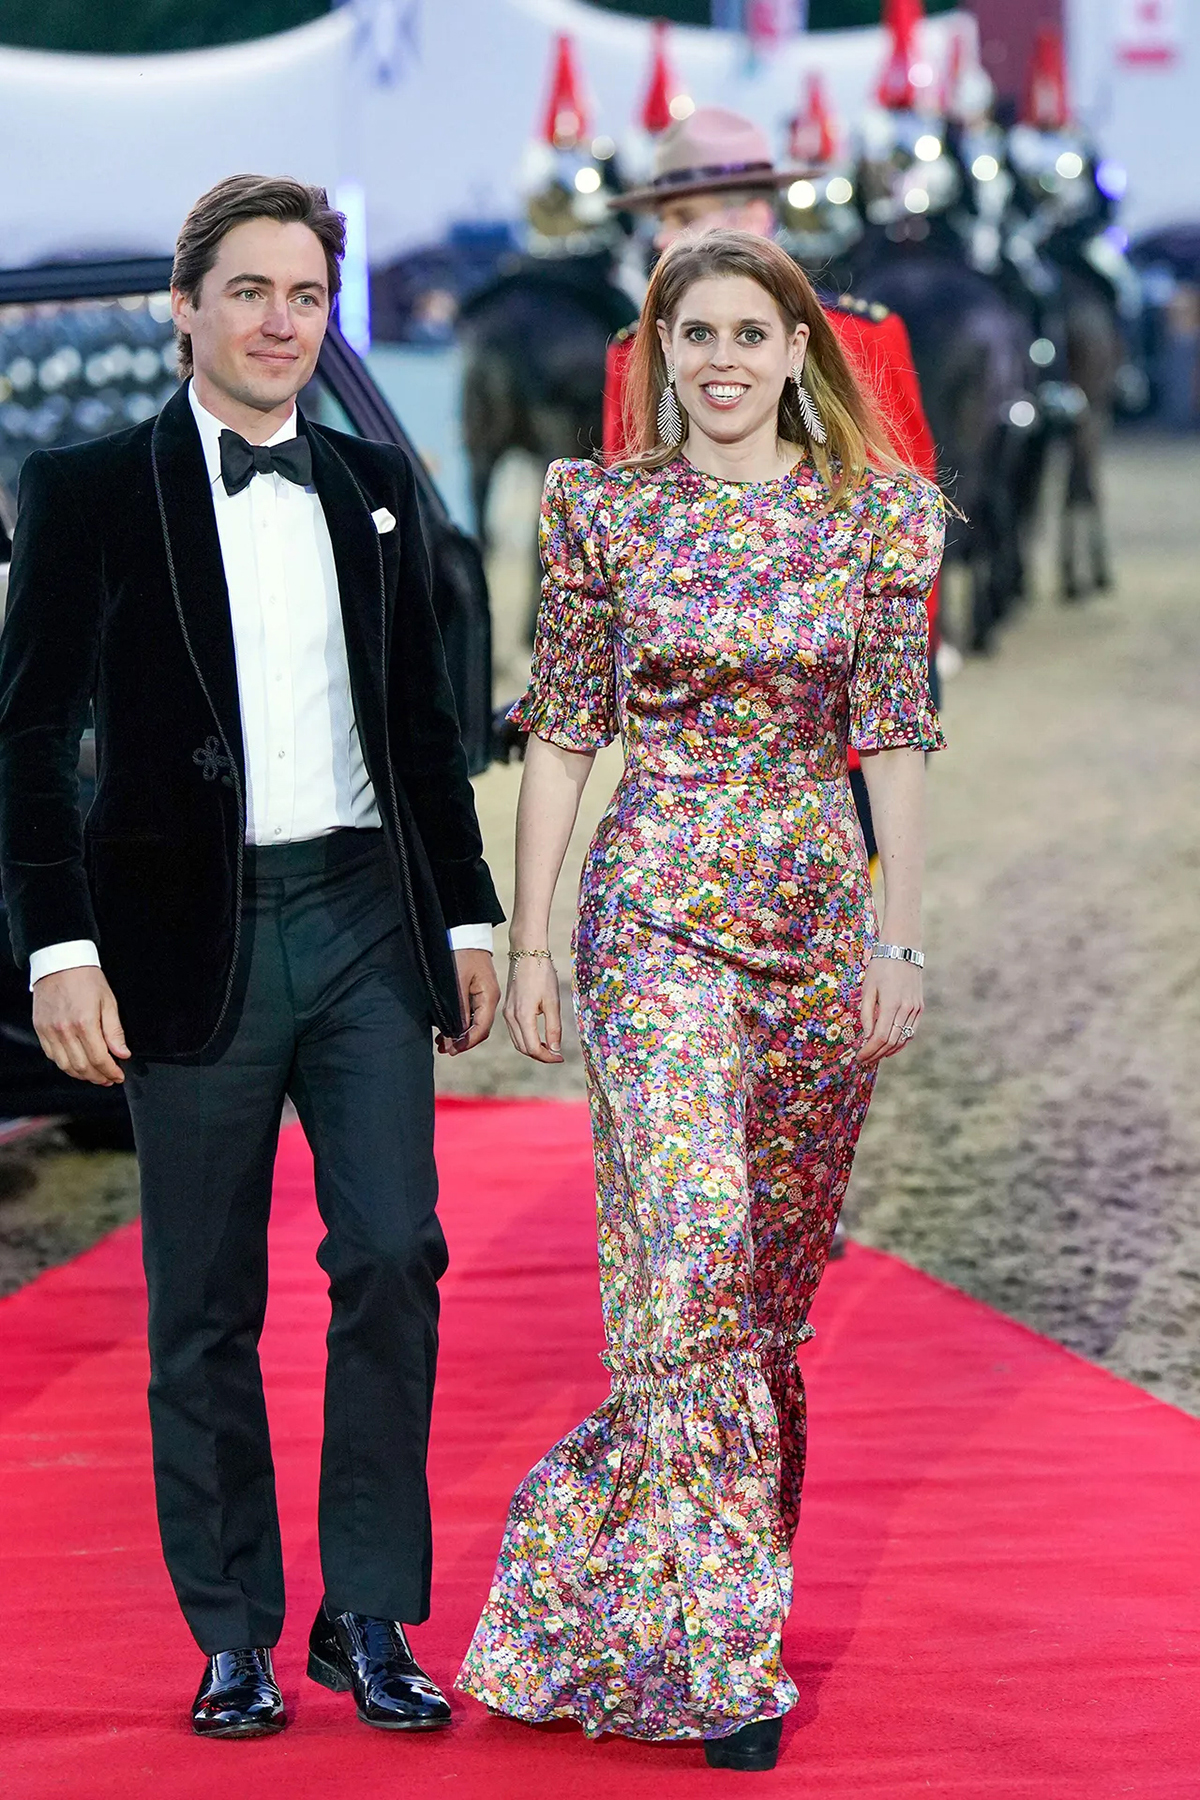 Принцесса Беатрис с супругом Эдоардо Мапелли-Моцци прибывают на конное шоу в Виндзорском замке приуроченного платиновому юбилею королевы Елизаветы II «Галоп по истории» в среду 11 мая 2022, Англия